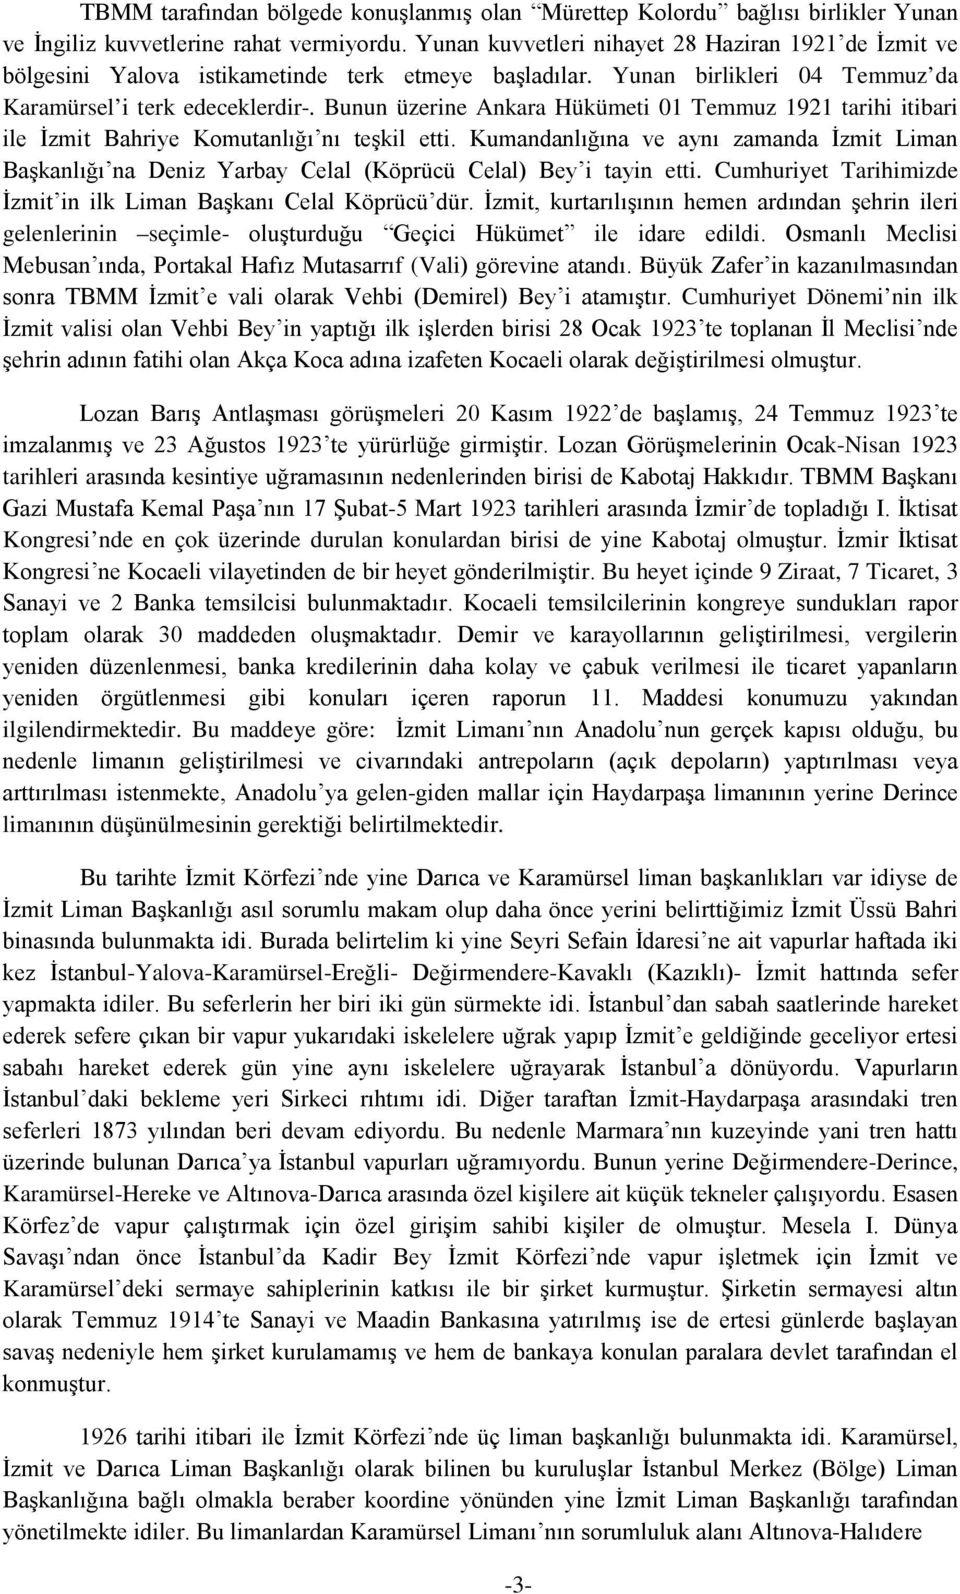 Bunun üzerine Ankara Hükümeti 01 Temmuz 1921 tarihi itibari ile İzmit Bahriye Komutanlığı nı teşkil etti.